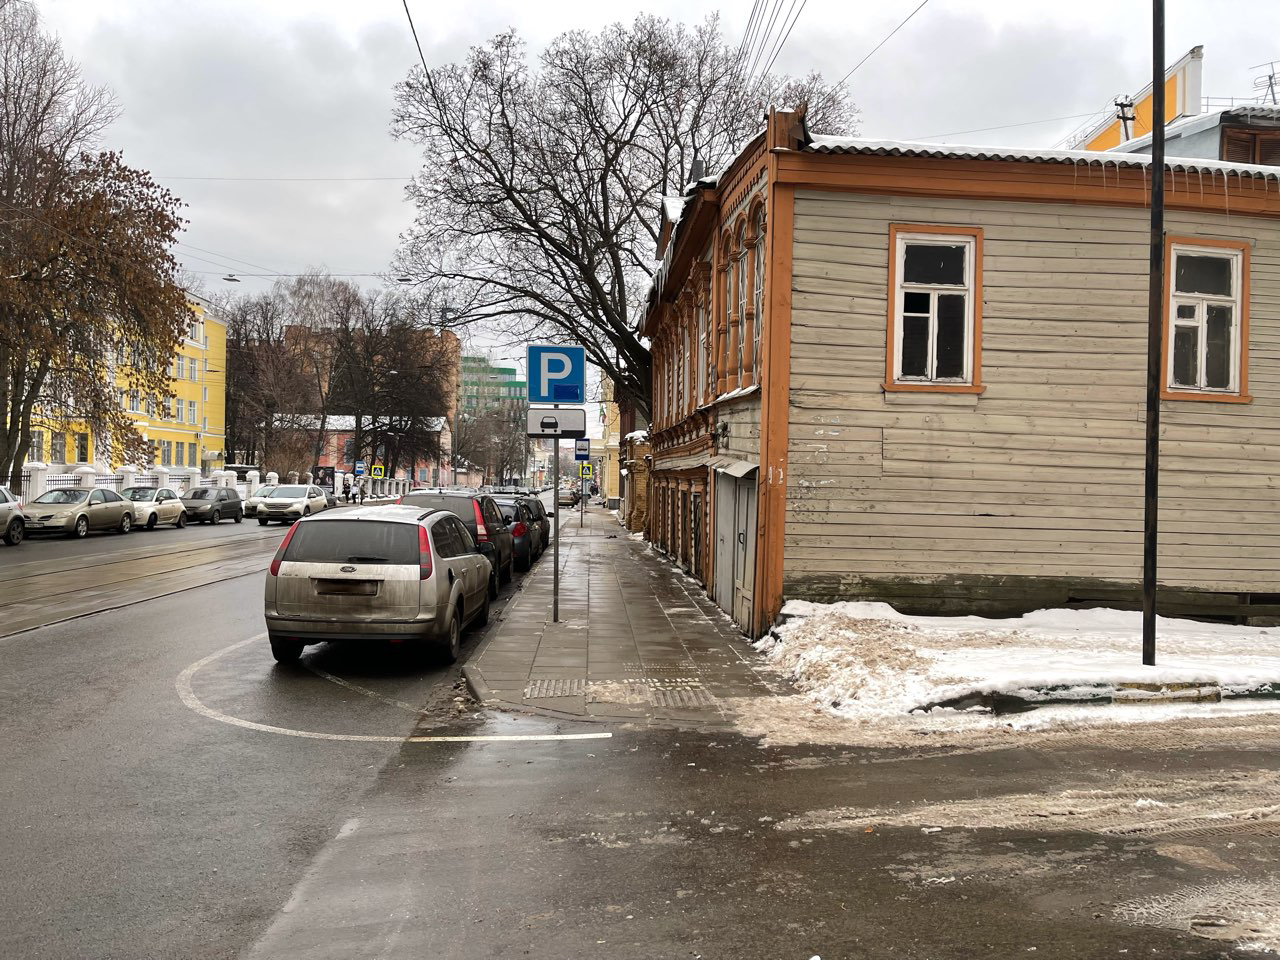 Более ста платных парковочных зон утвердила мэрия Нижнего Новгорода - фото 1